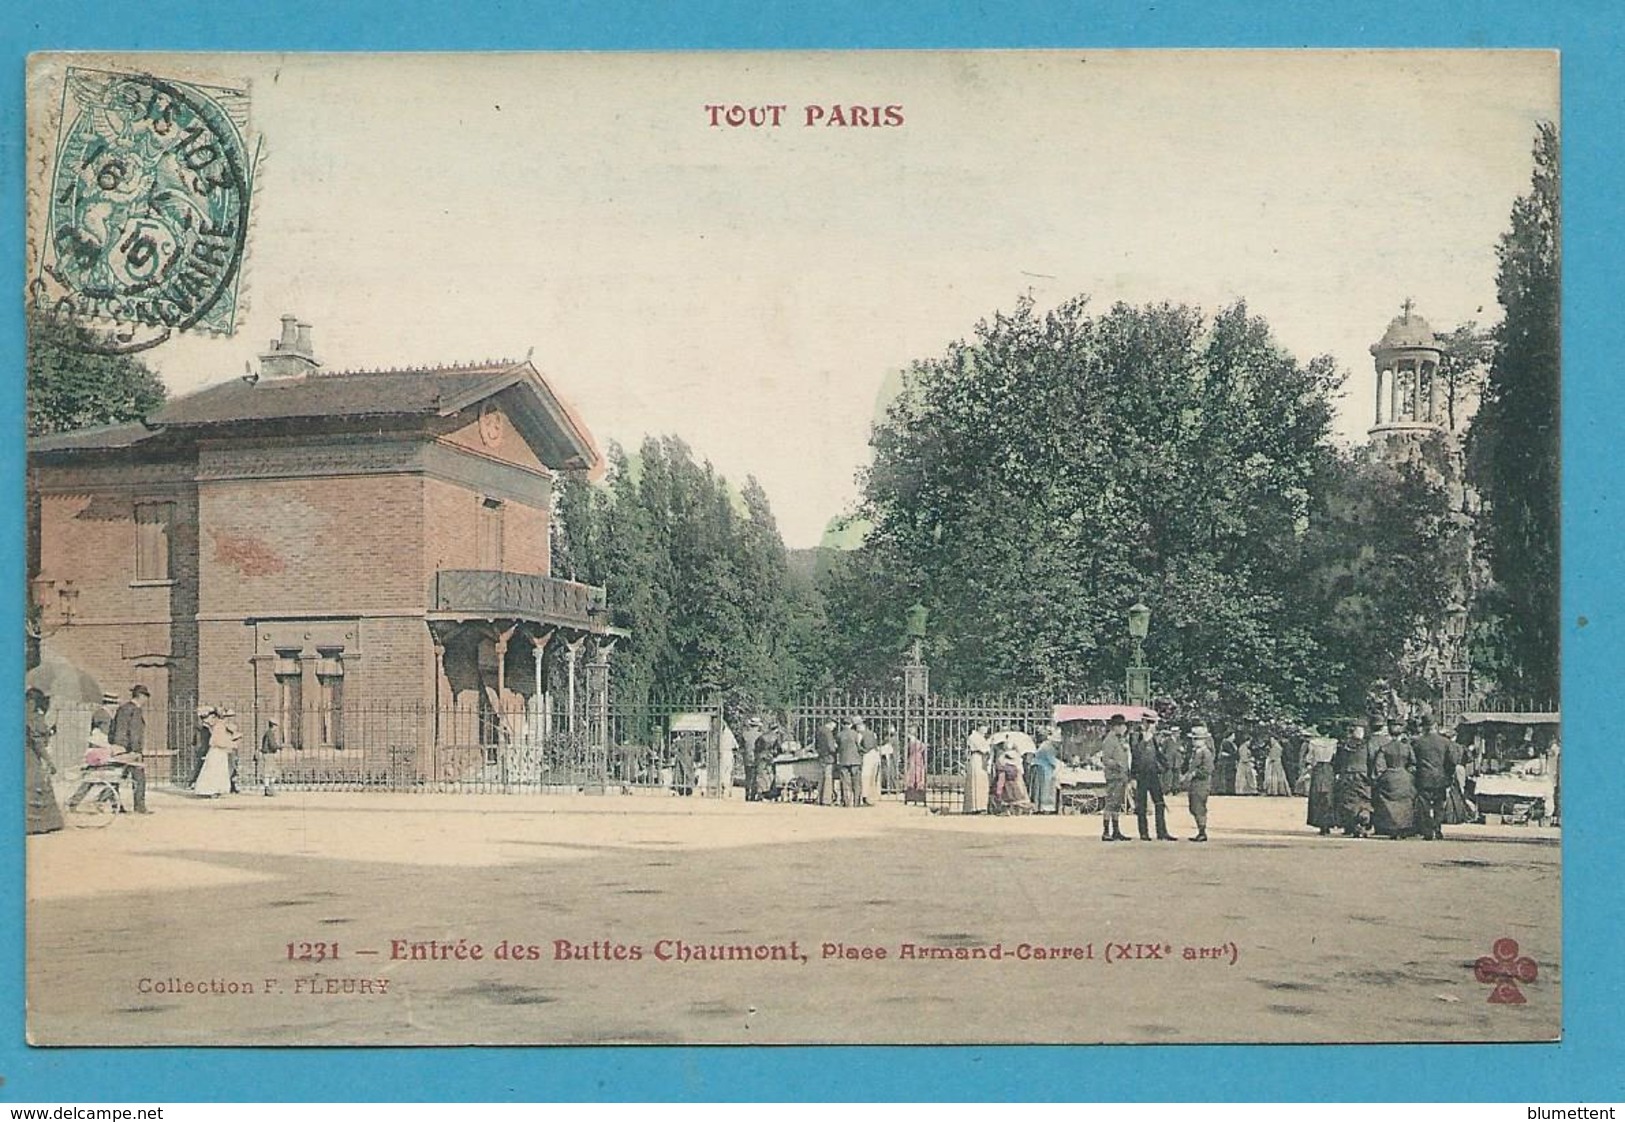 CPA 1231 TOUT PARIS - Entrée Des Buttes-Chaumon Place Armand-Carrel (XIXè Arrt)  Ed.FLEURY - Arrondissement: 19